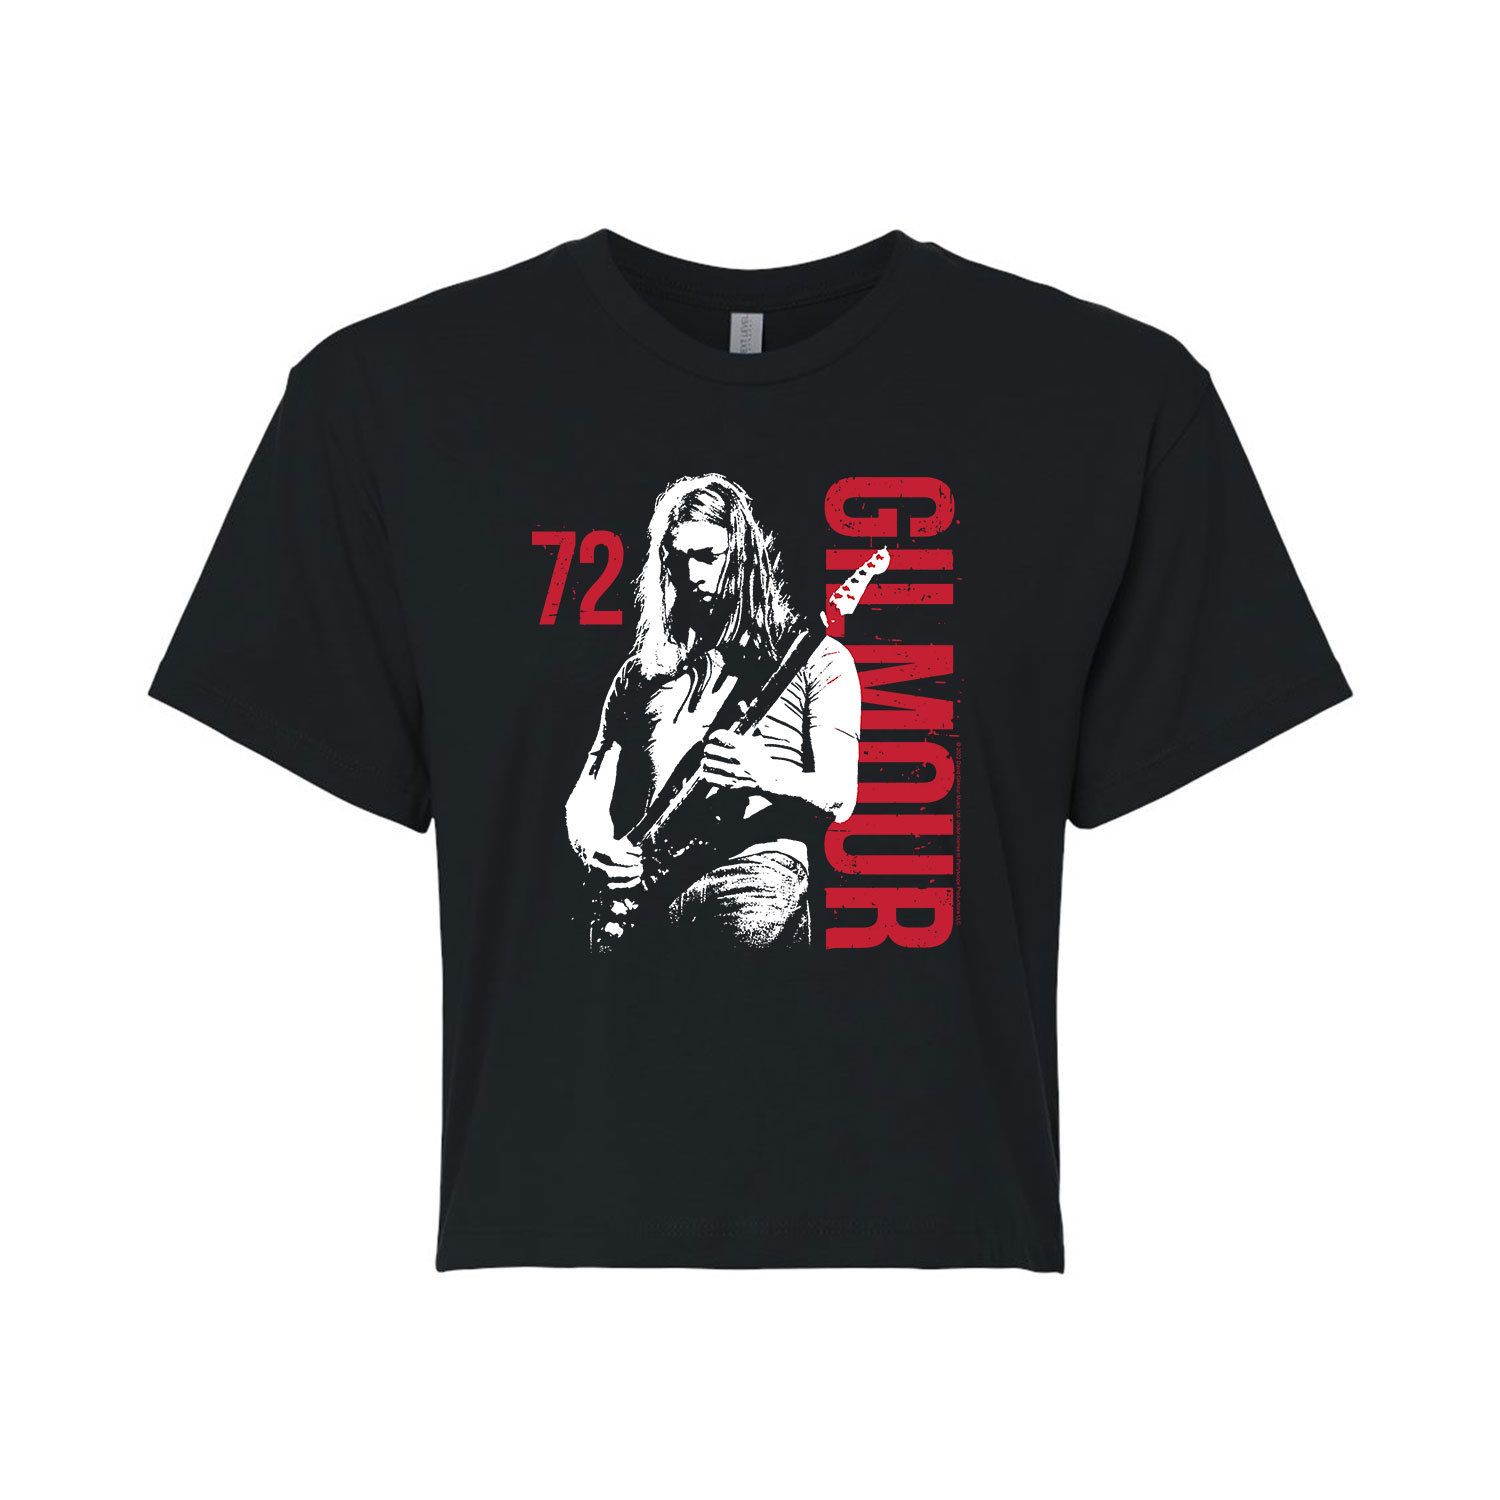 Укороченная футболка с рисунком David Gilmour 72 для юниоров Licensed Character футболка david gilmour